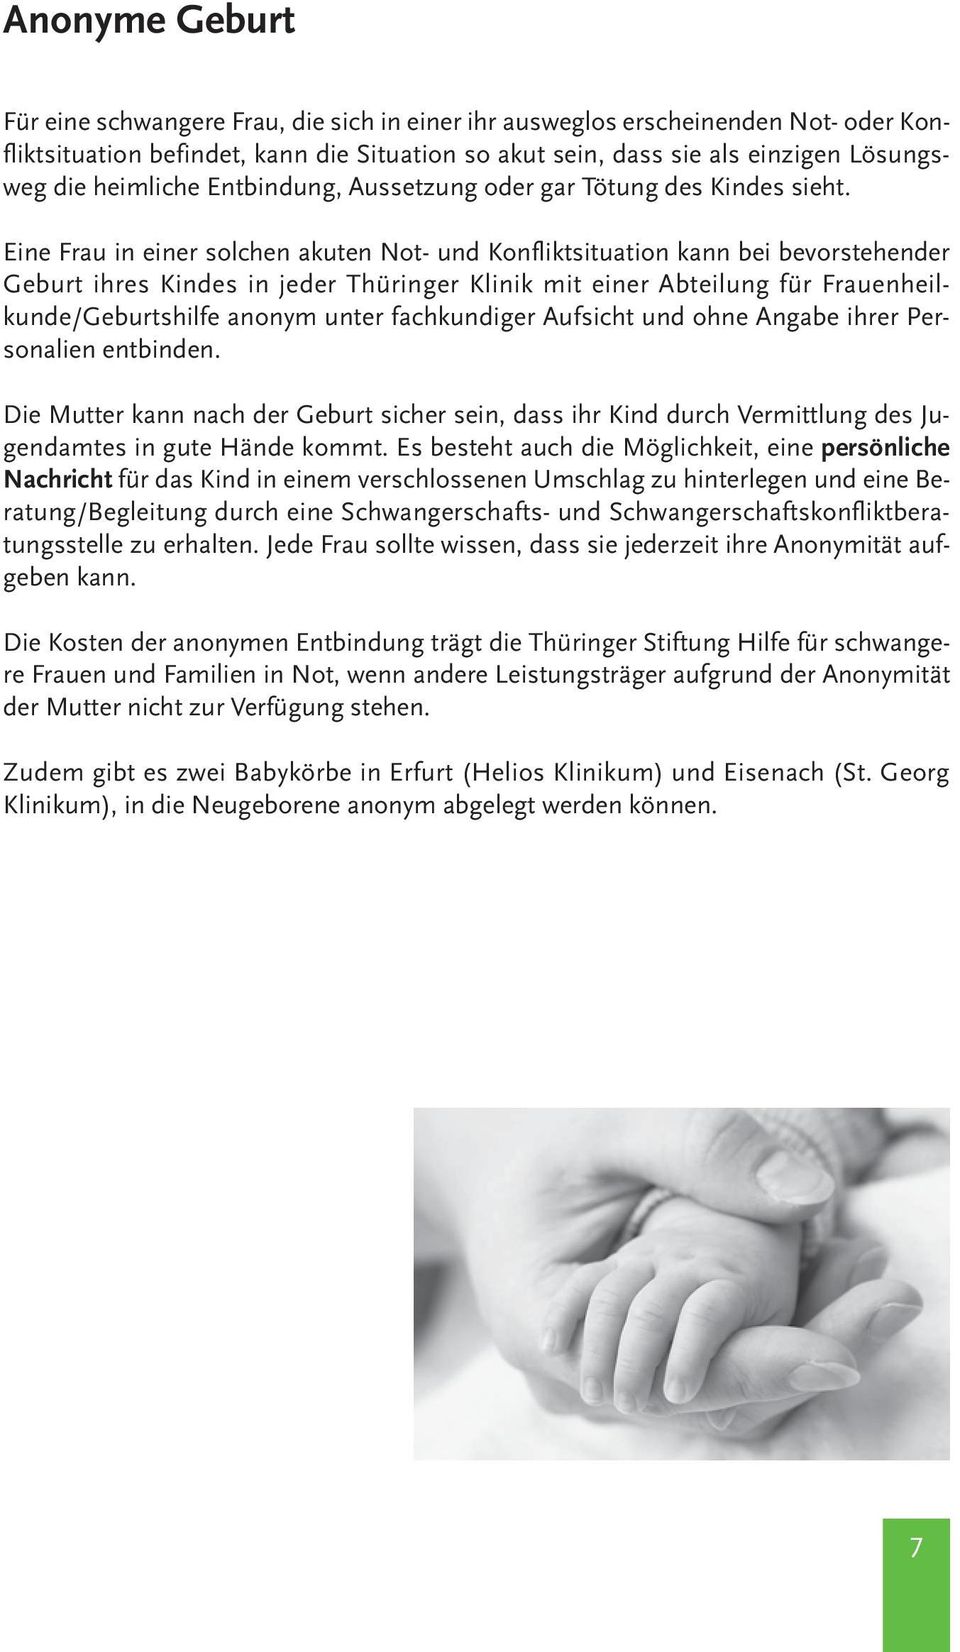 Eine Frau in einer solchen akuten Not- und Konfliktsituation kann bei bevorstehender Geburt ihres Kindes in jeder Thüringer Klinik mit einer Abteilung für Frauenheilkunde/Geburtshilfe anonym unter